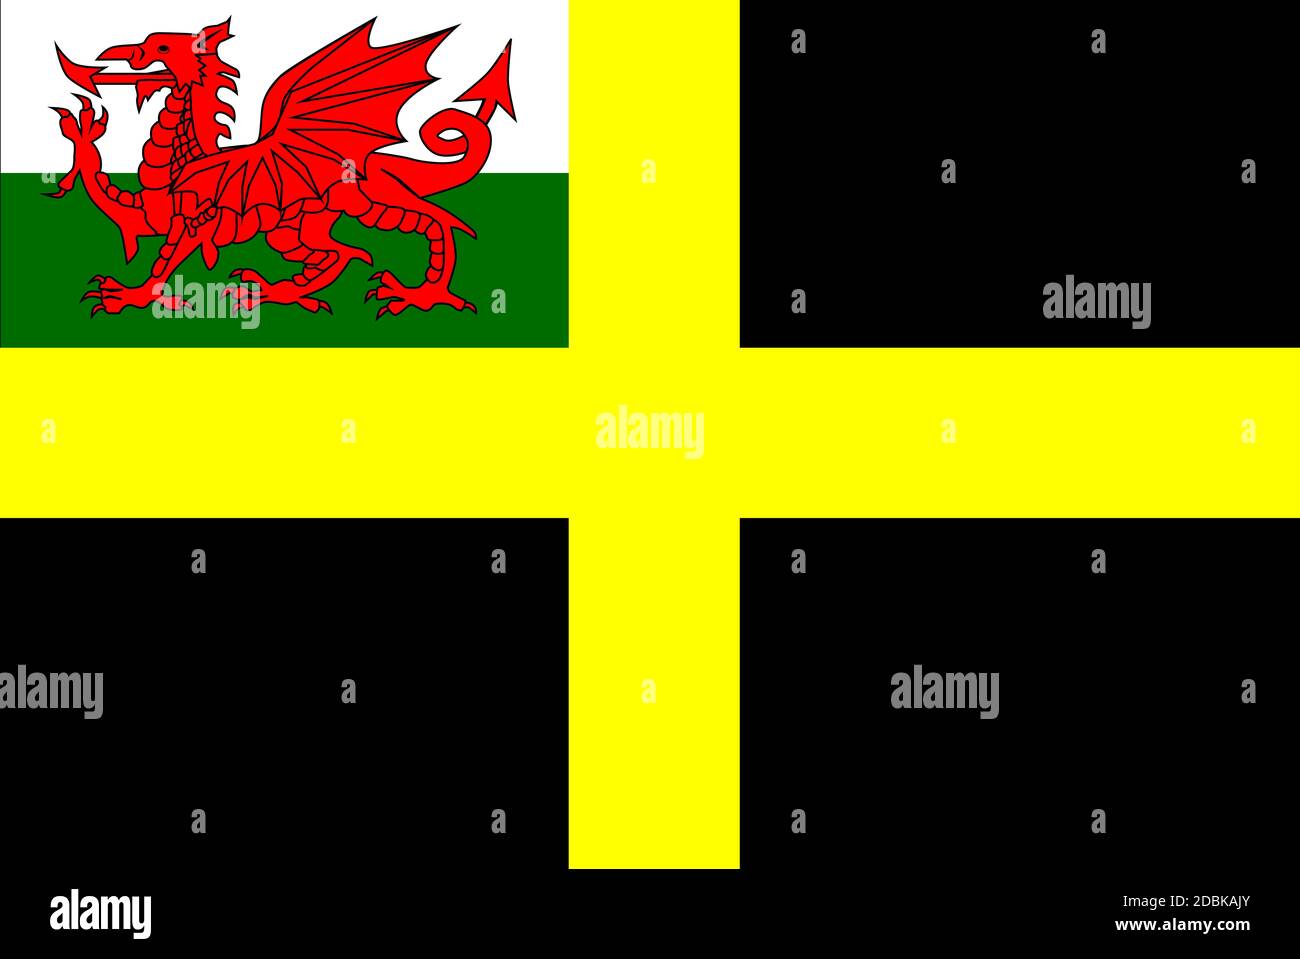 Lá cờ Thánh David với chữ thập màu vàng là một trong những lá cờ đẹp nhất thế giới. Hãy xem hình ảnh này để tìm hiểu cách sử dụng lá cờ Wales này một cách độc đáo và tạo nên bữa tiệc hoàn hảo.